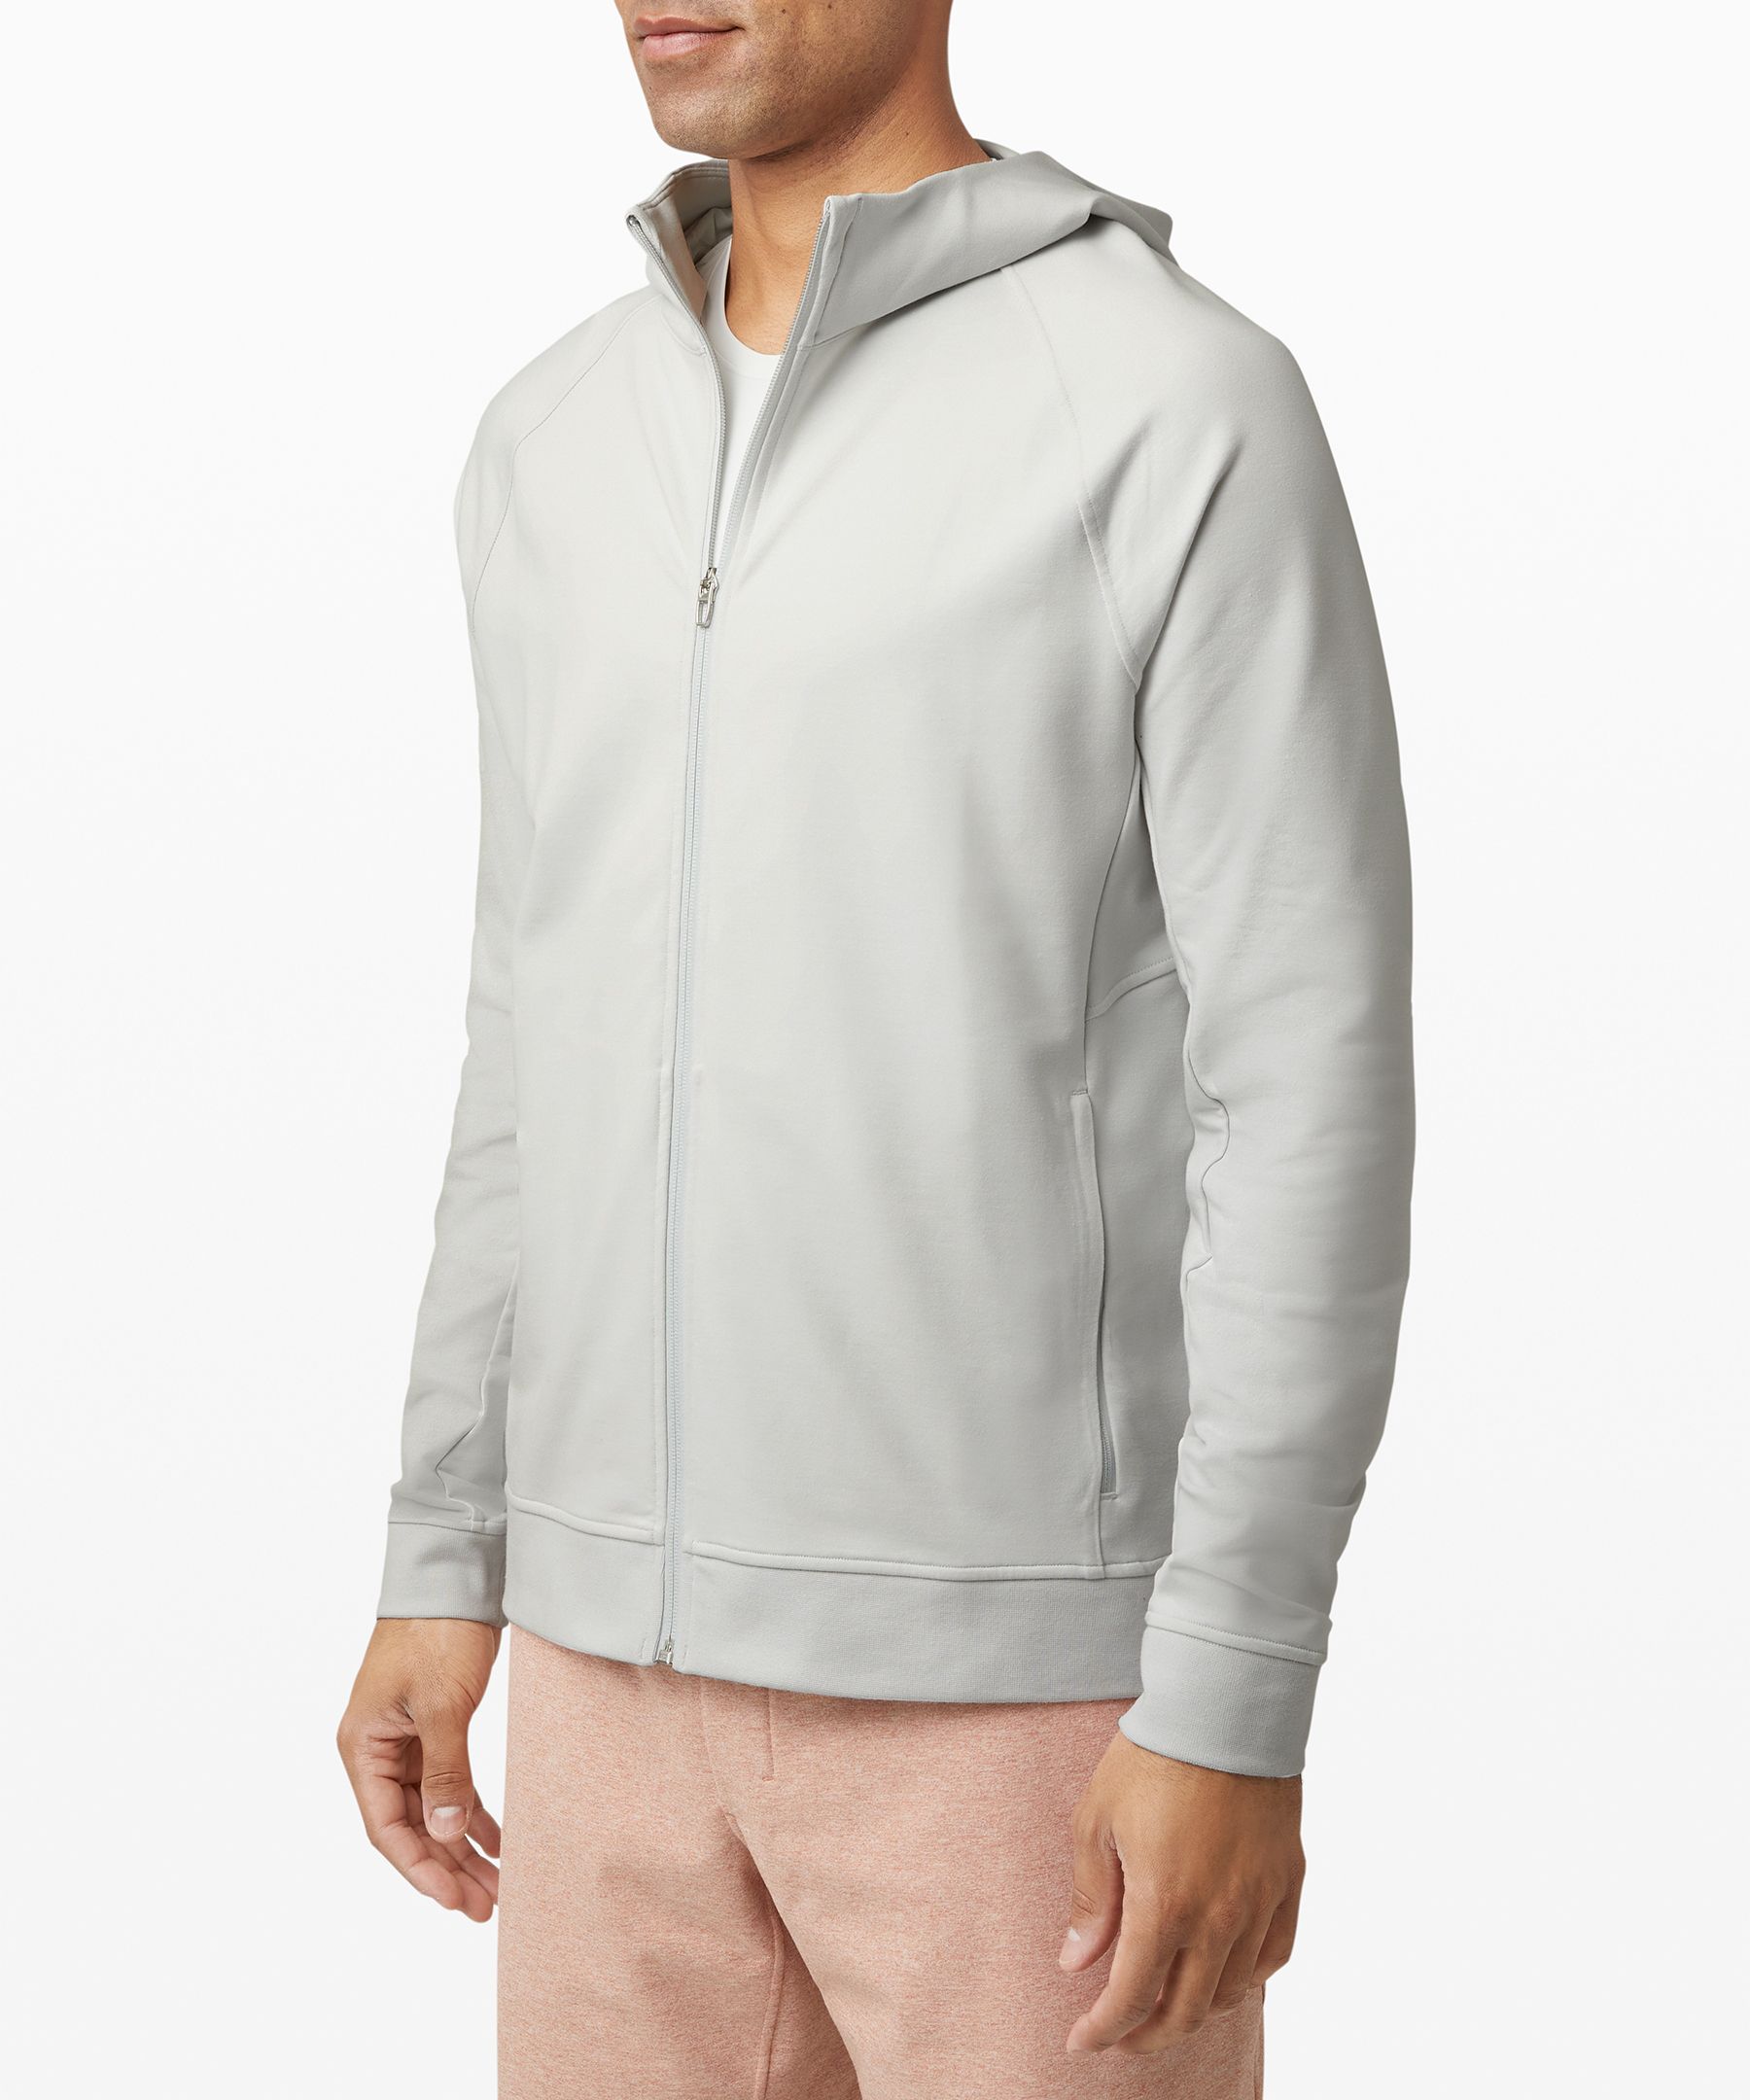 lululemon white zip up jacket